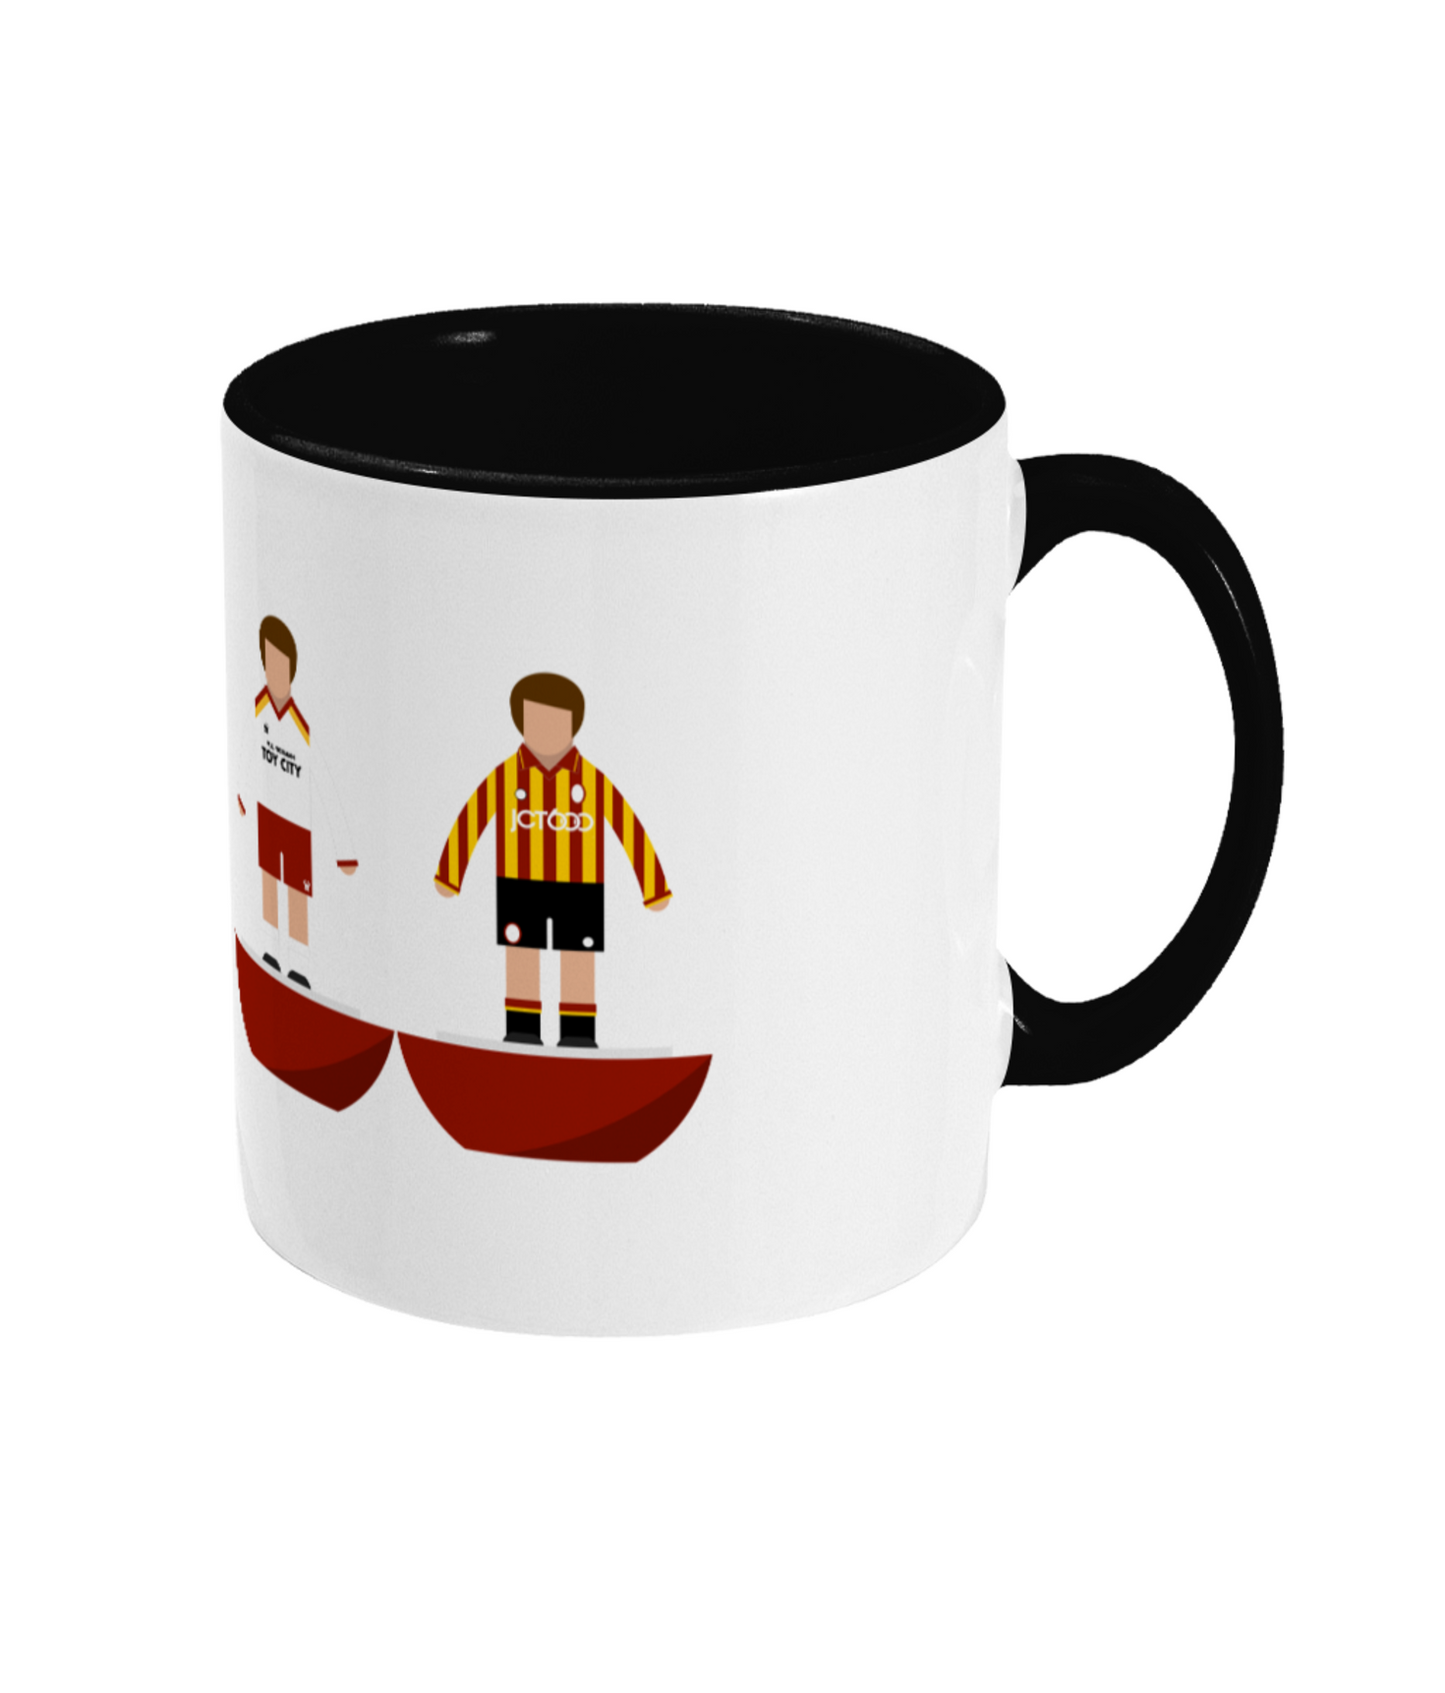 Football Kits 'Bradford City combined' Mug